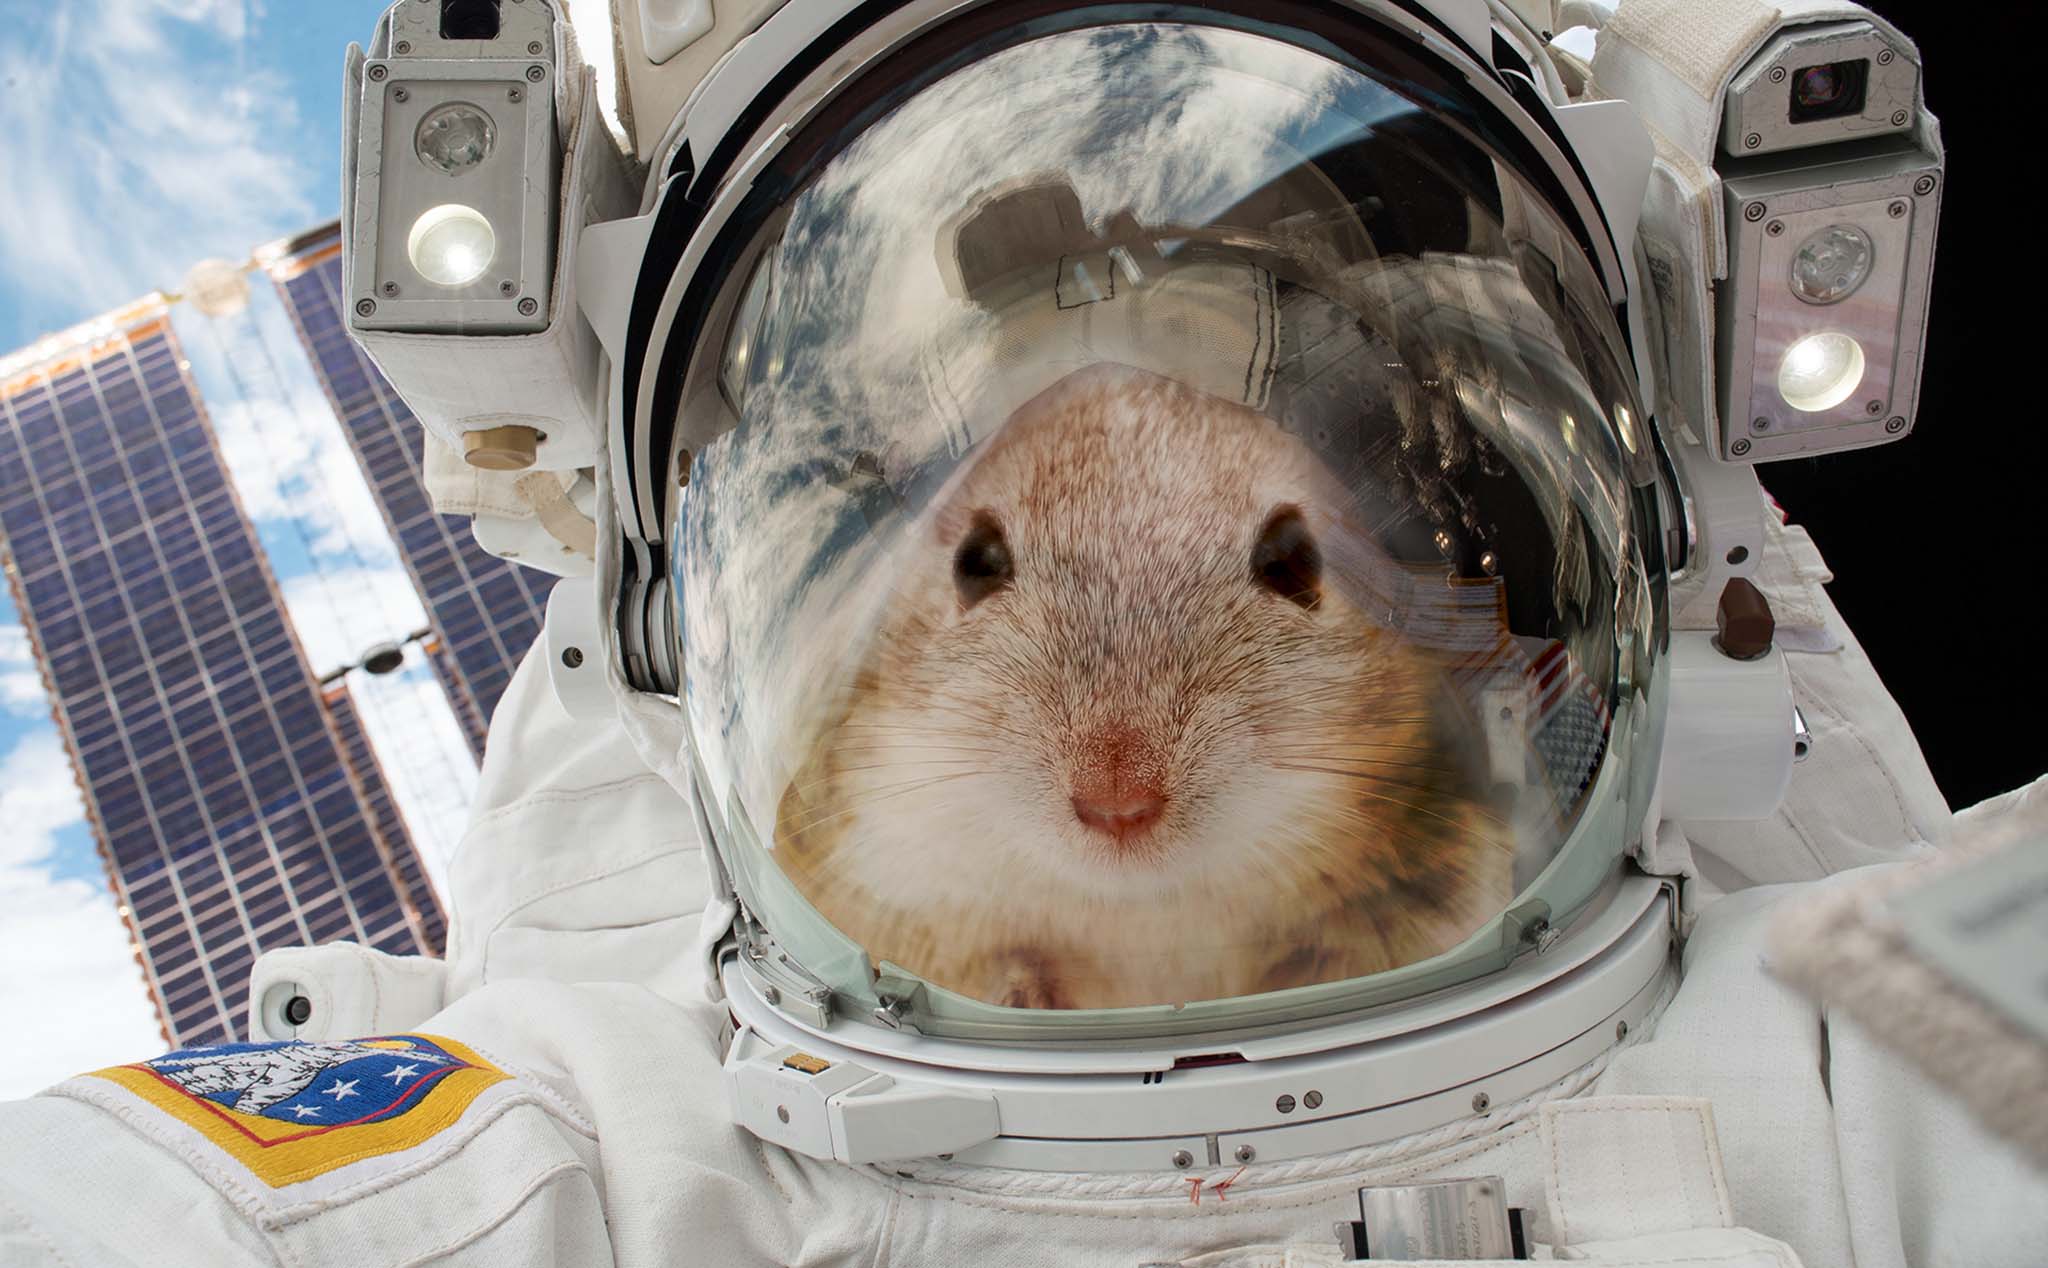 [Video] NASA đưa 4 chú chuột lên ISS để nghiên cứu khả năng thích nghi và đây là những gì xảy ra